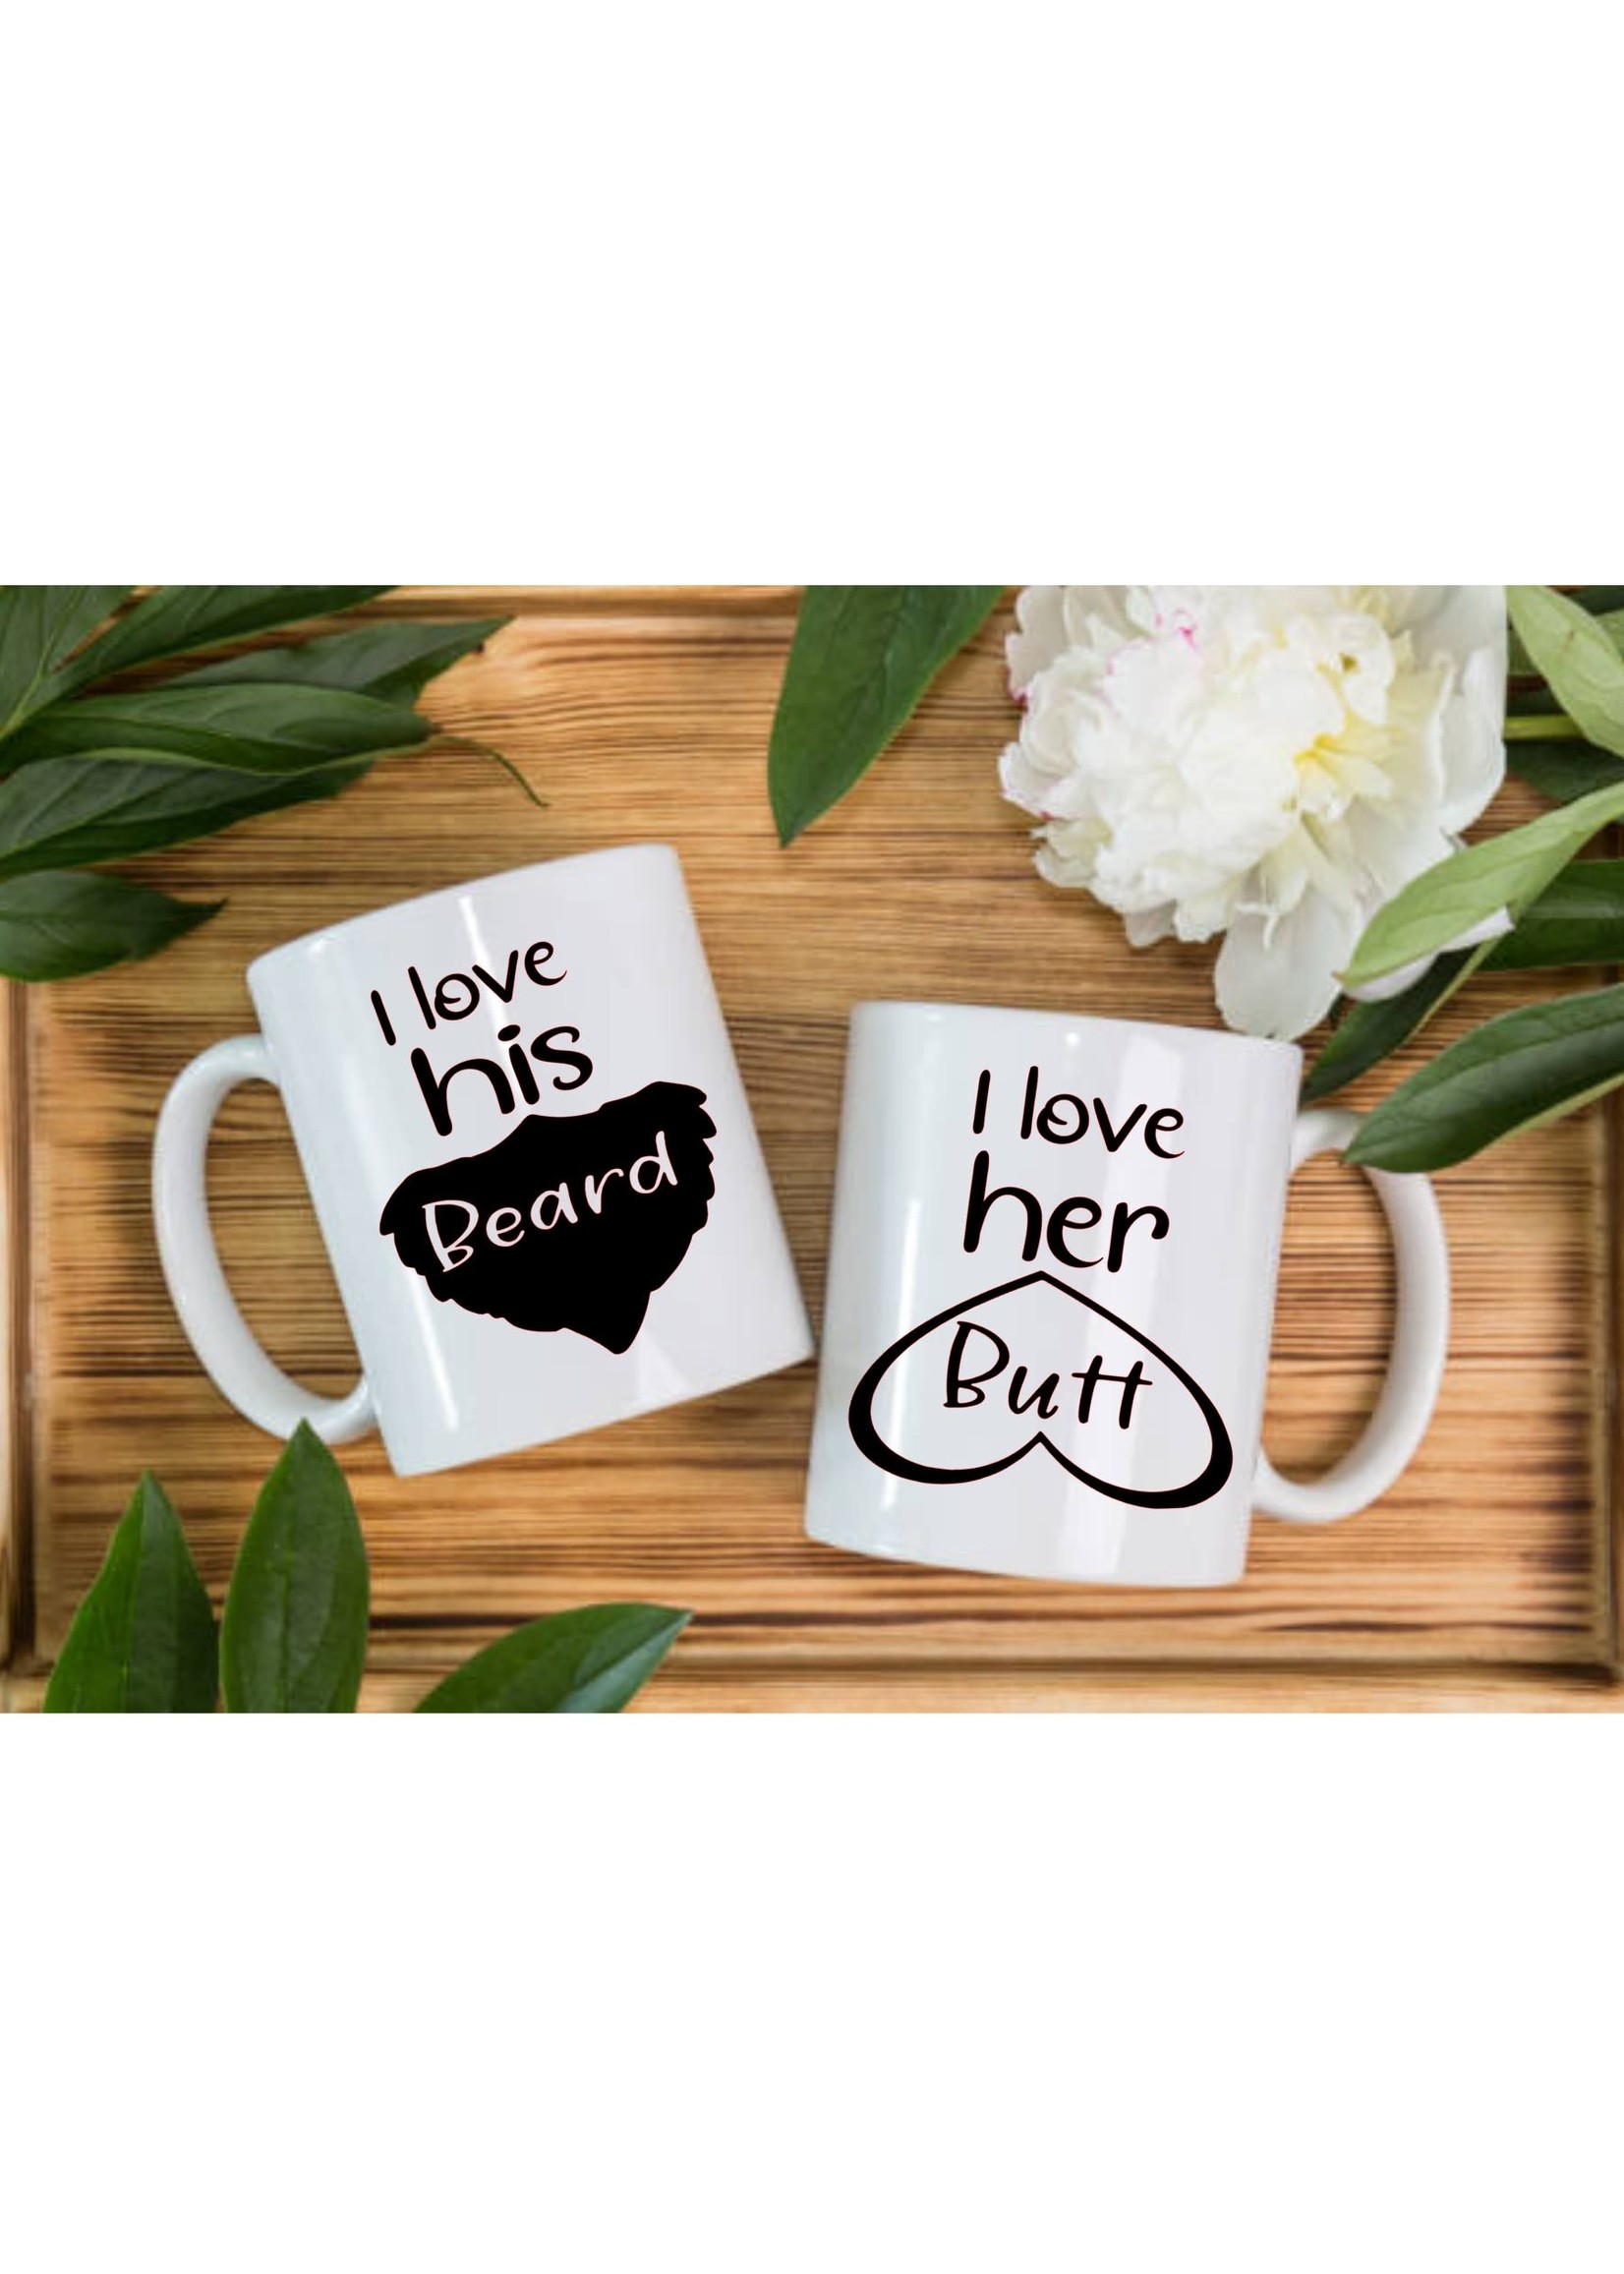 Butt/Beard mugs